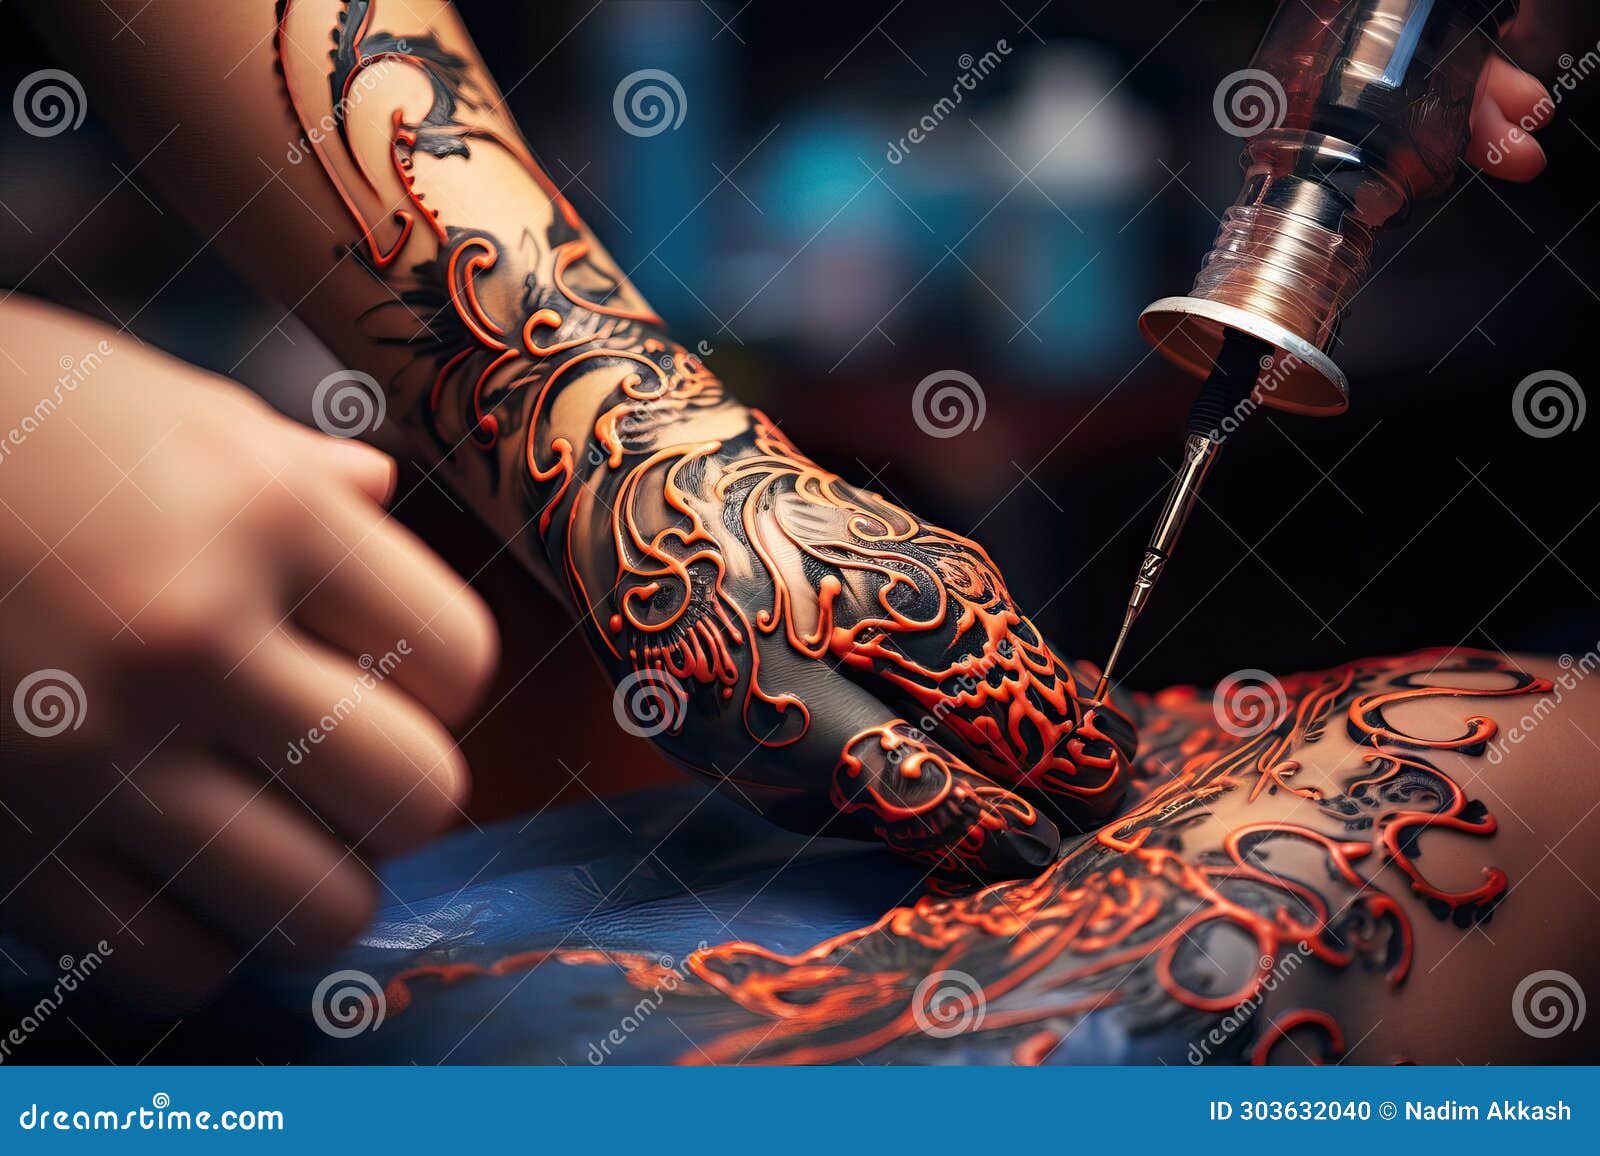 Buy Arrow Temporary Tattoo, Arrow Tattoo, Compass Tattoo, Fake Tattoo,  Meaningful Tattoo, Feminine Tattoo, Symbol Tattoo, Circuit Board Online in  India - Etsy